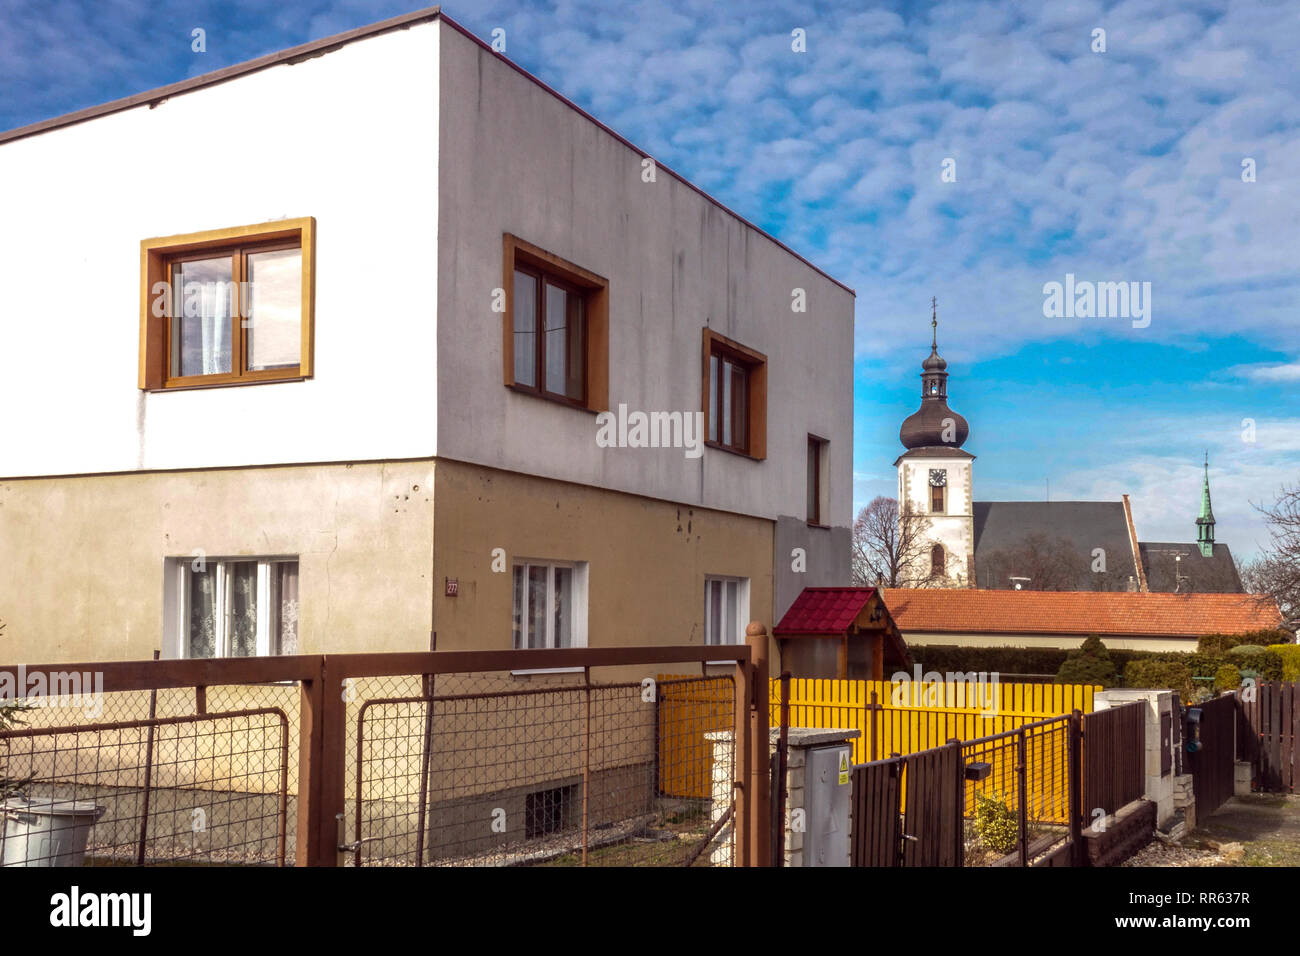 Architektur, im Gegensatz, Haus aus dem Jahr 70s und gotische Kirchengeschichte, böhmische Dorfarchitektur mit einem Sinn für Geometrie Haus auf Tschechisch Stockfoto